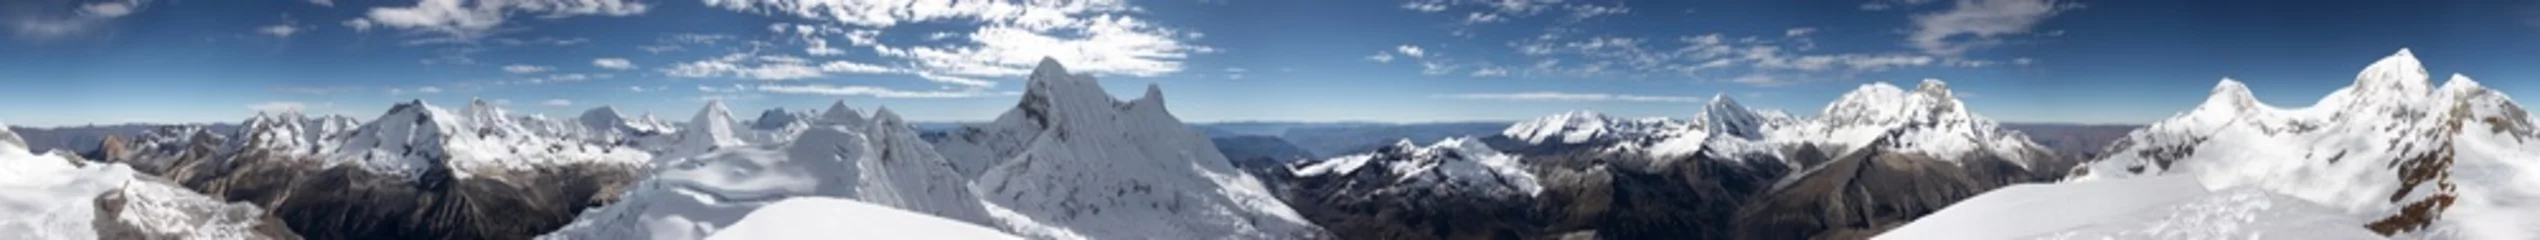 Fototapete Panoramafotos Gipfel 360-Grad-Panorama